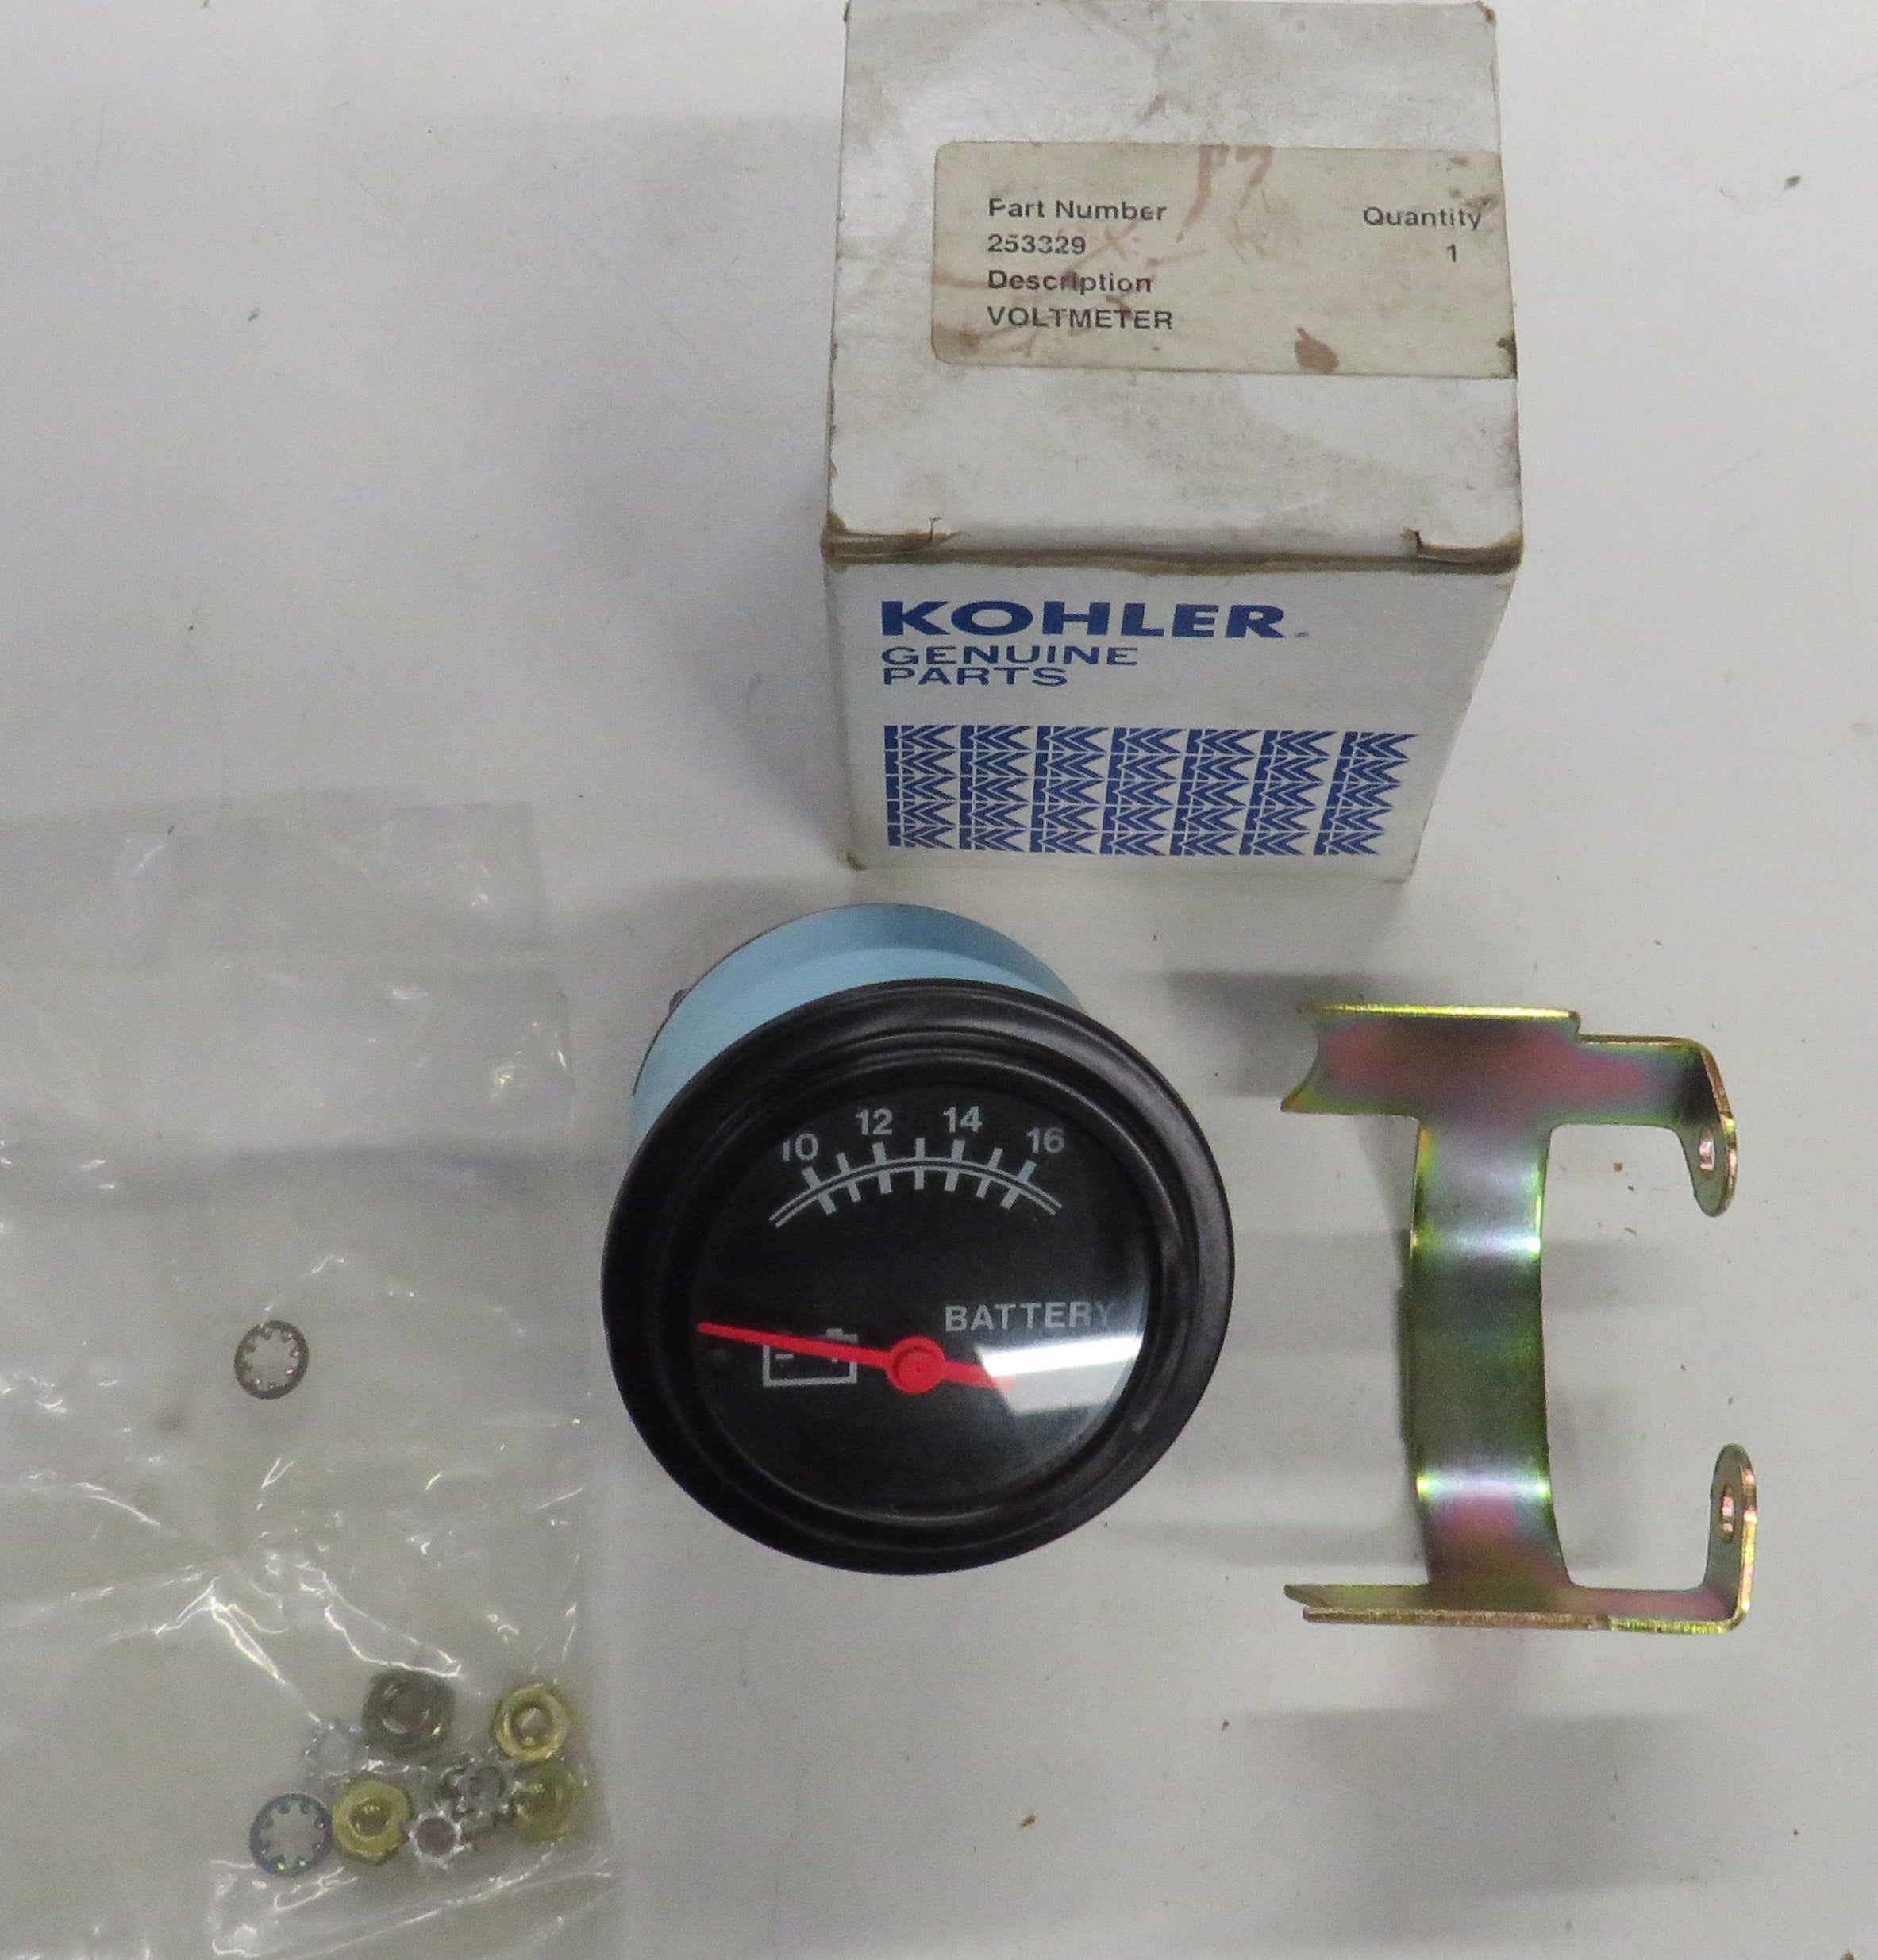 Kohler 253329 Voltmeter Gauge 10-16V DC